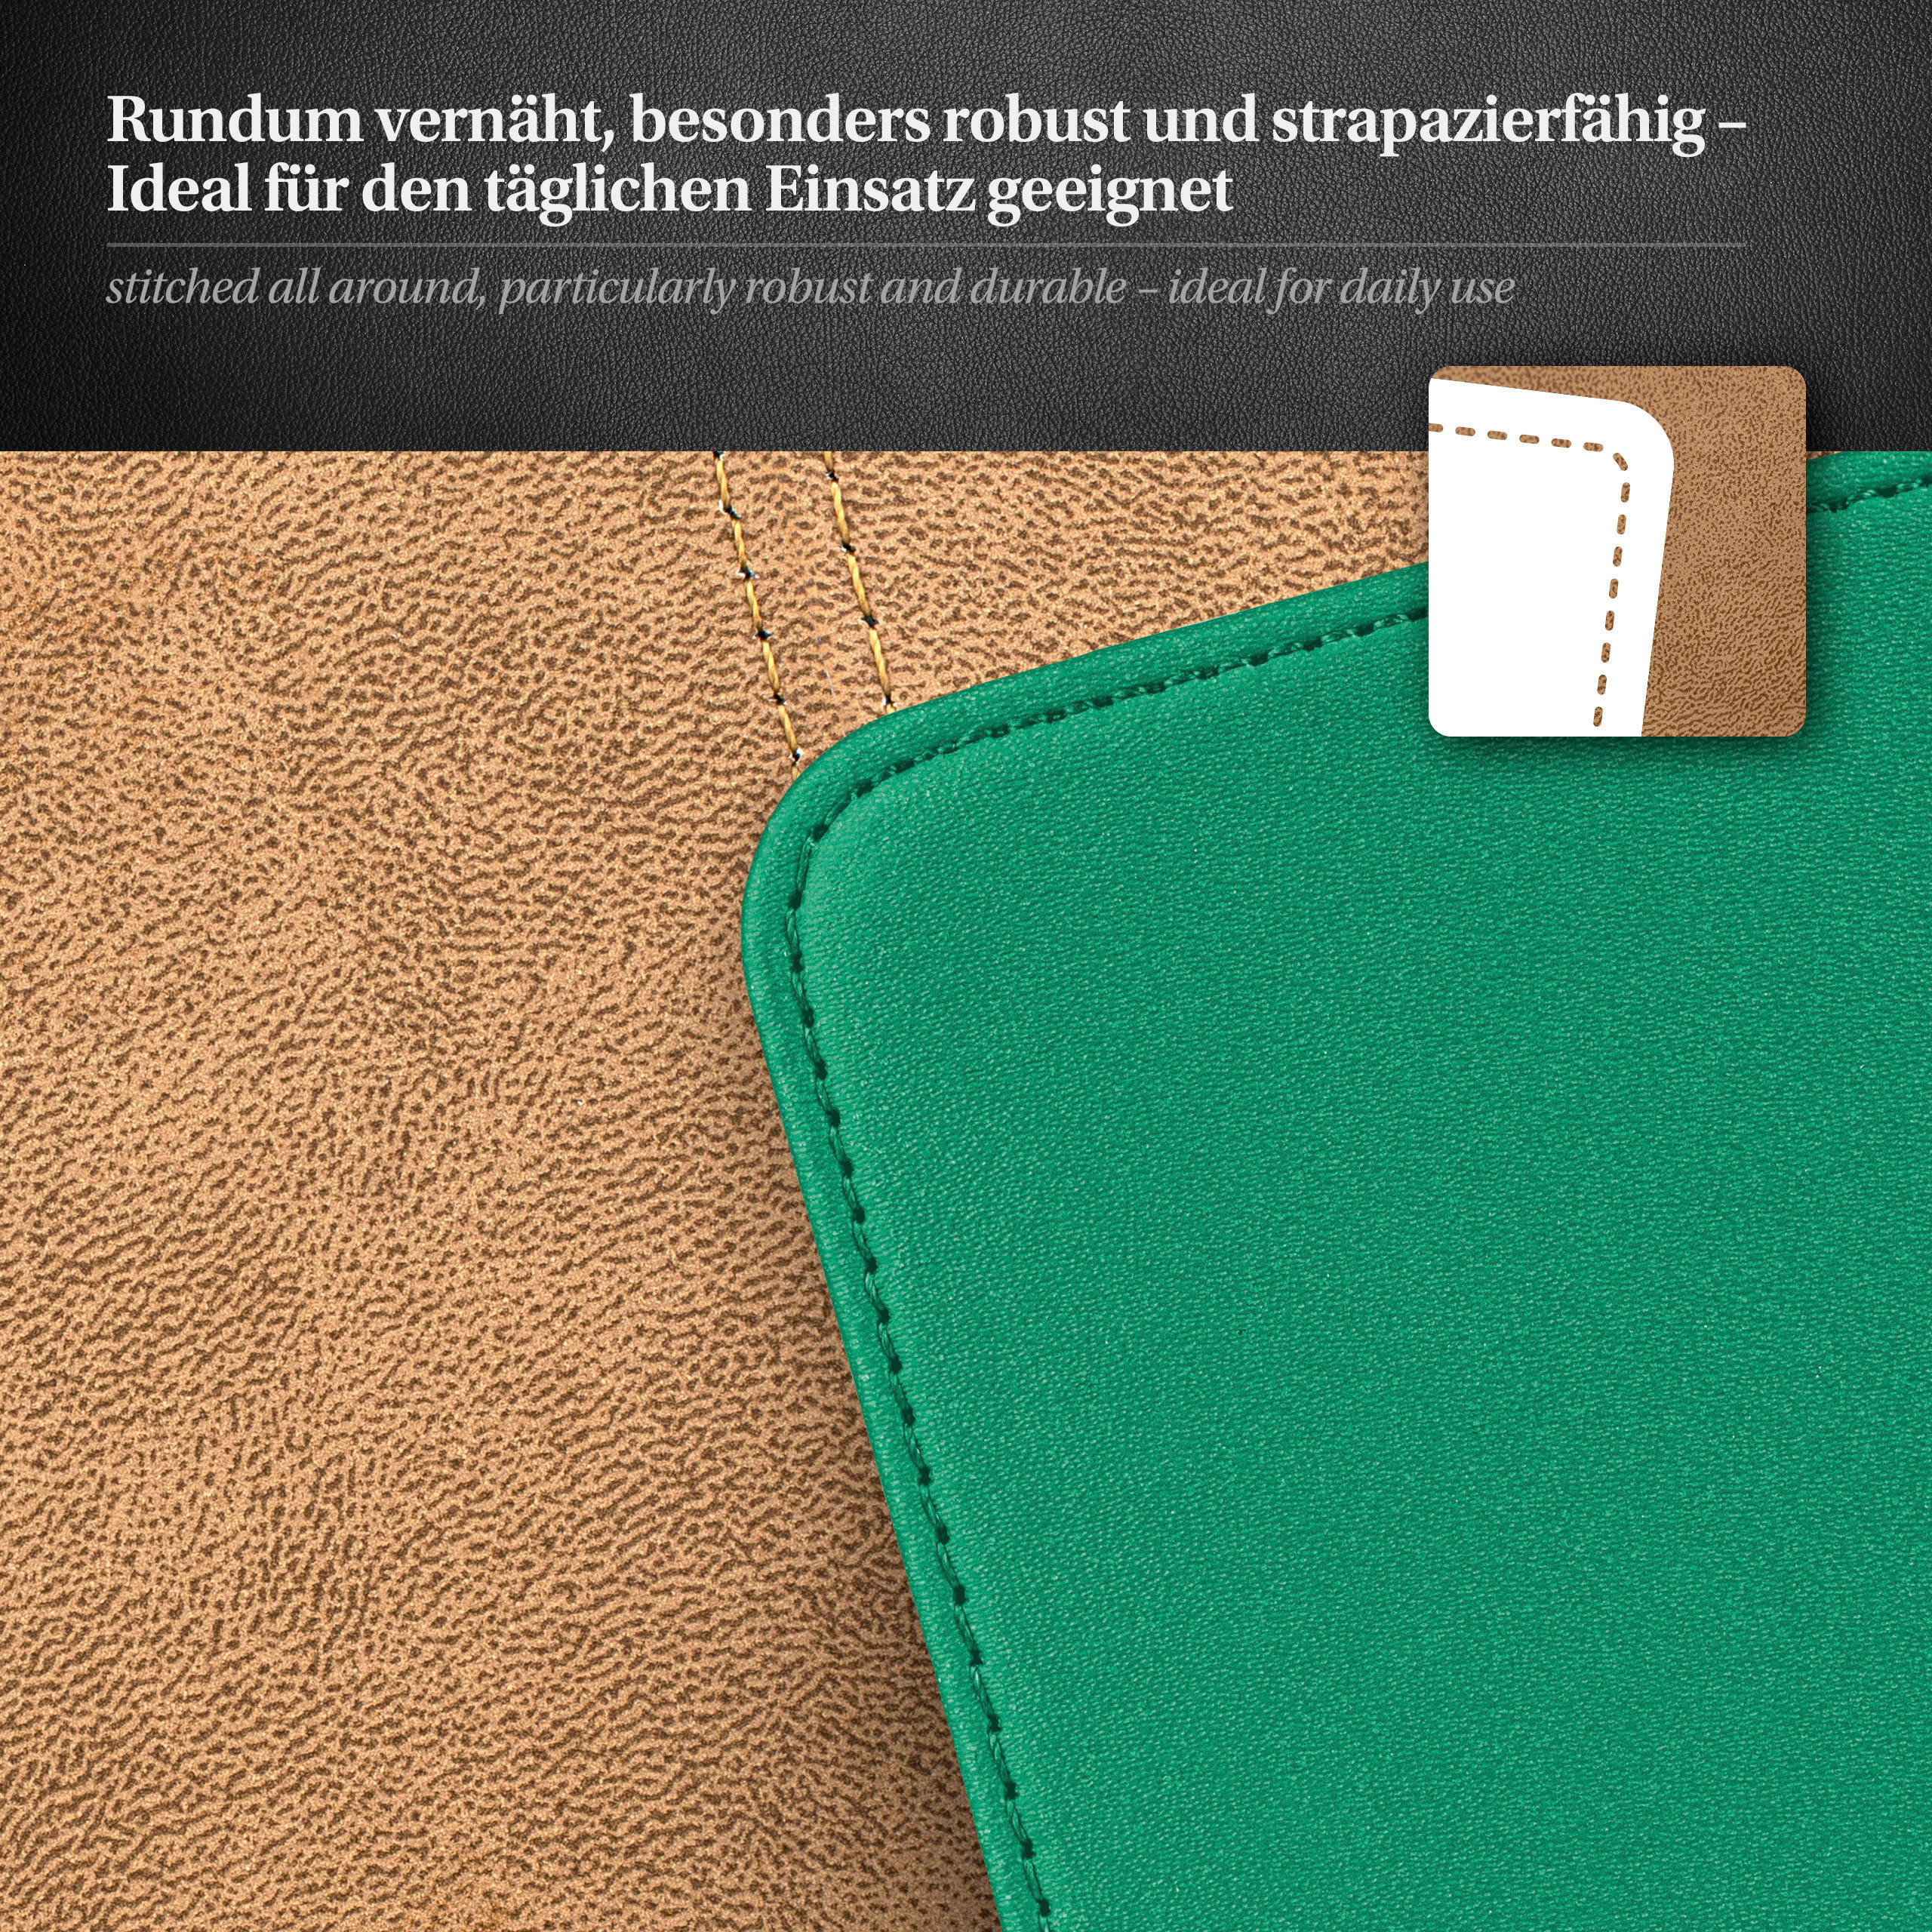 Cover, Emerald-Green M8 Case, / Flip Flip One HTC, MOEX M8s,